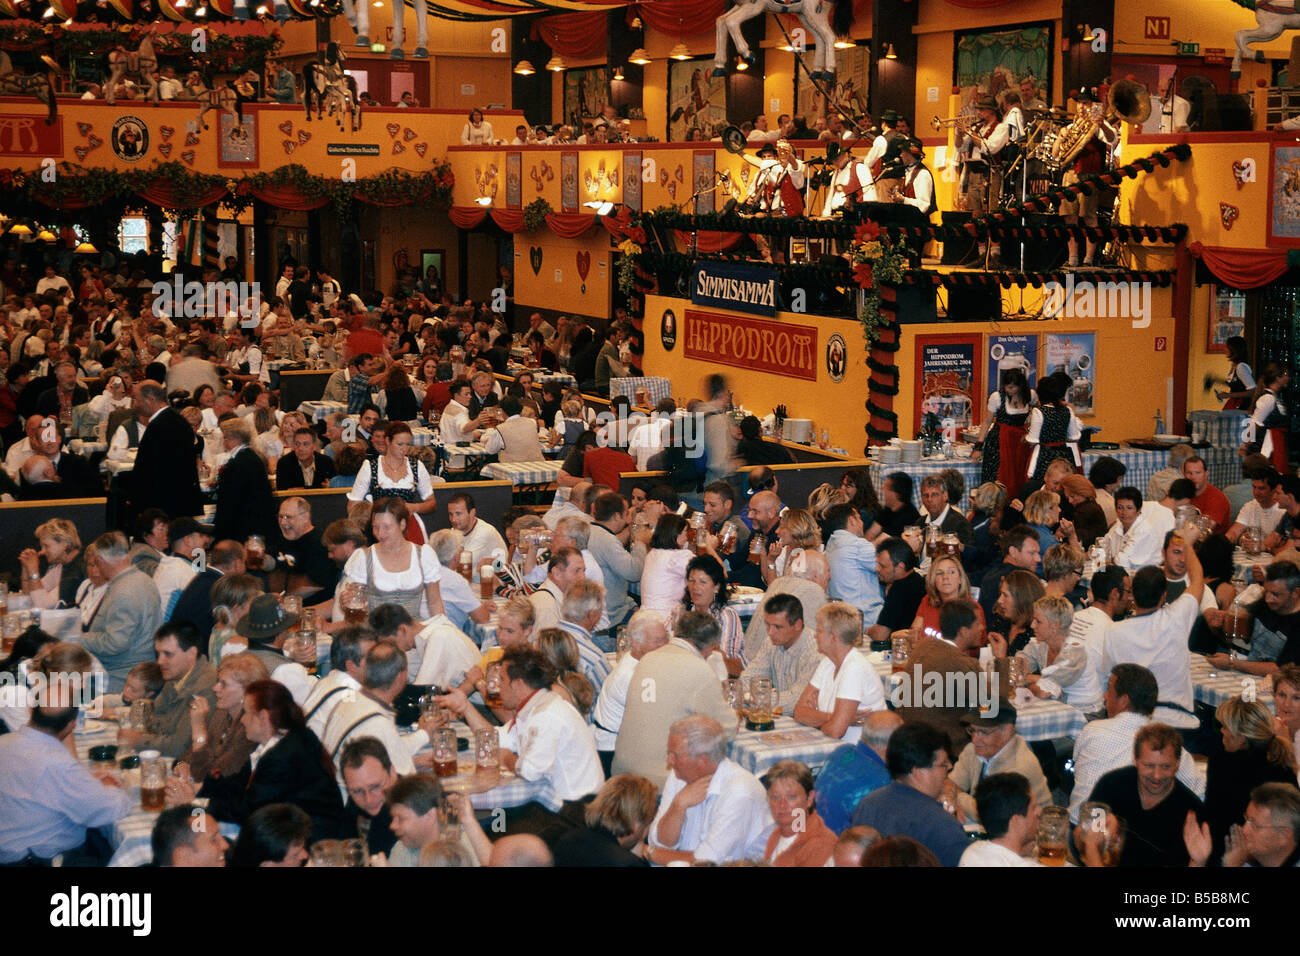 Jährliche Oktoberfest Bier großen Festspielhaus leuchtet auf Decke Personen an Tischen trinken aus Bierkrügen Liter Krüge München Stockfoto